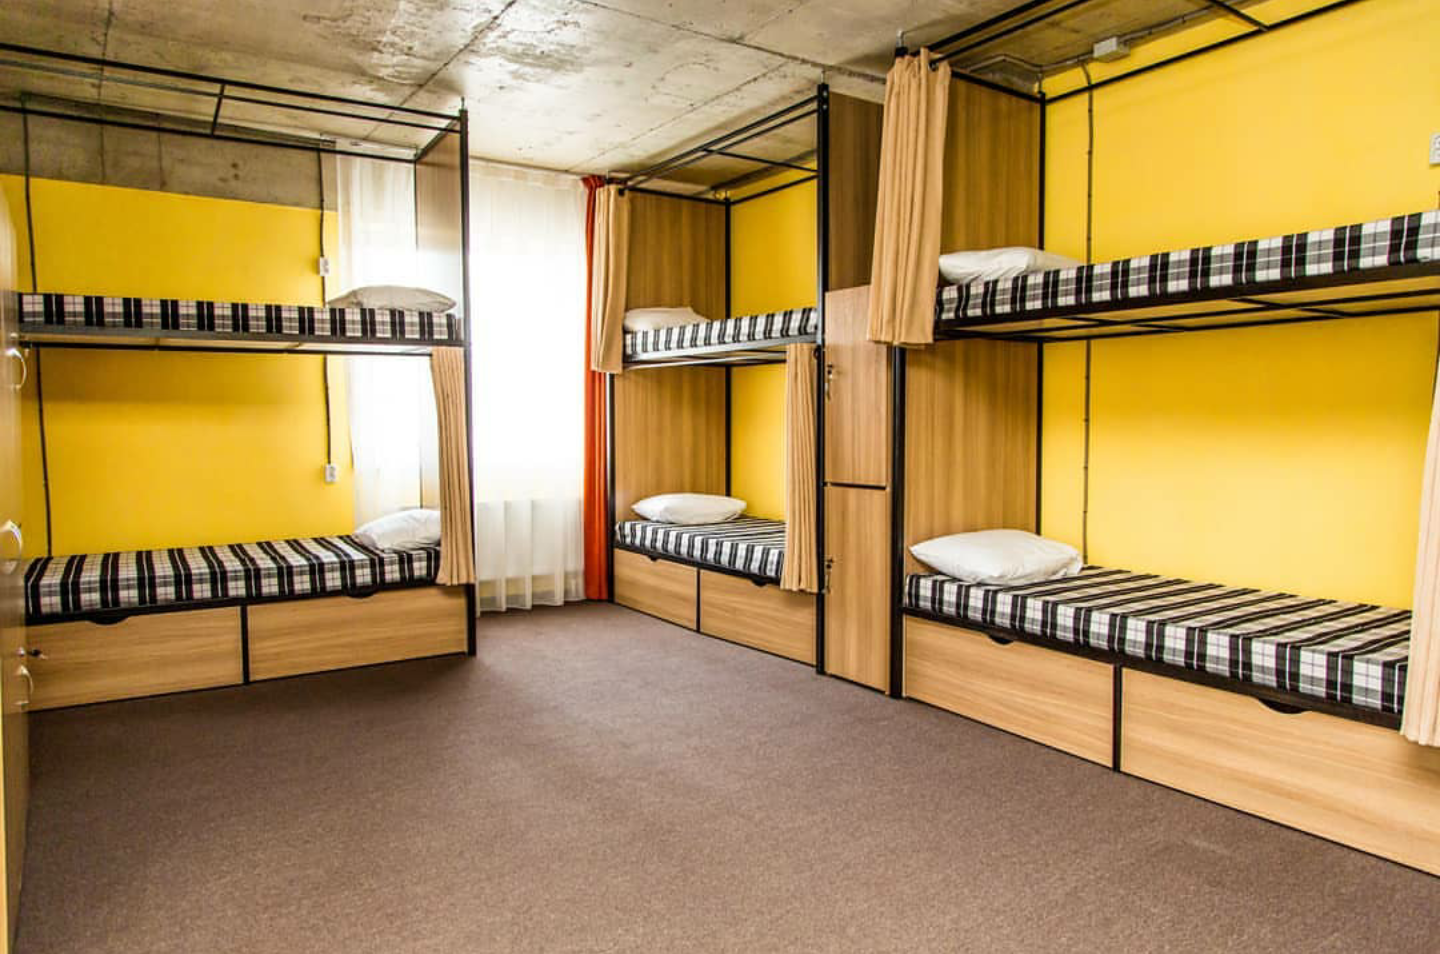 Красивое общежитие. Хостел Саларьево. Двухъярусная кровать для хостела. Двухъярусные кровати для хостелов. Хостел комната.